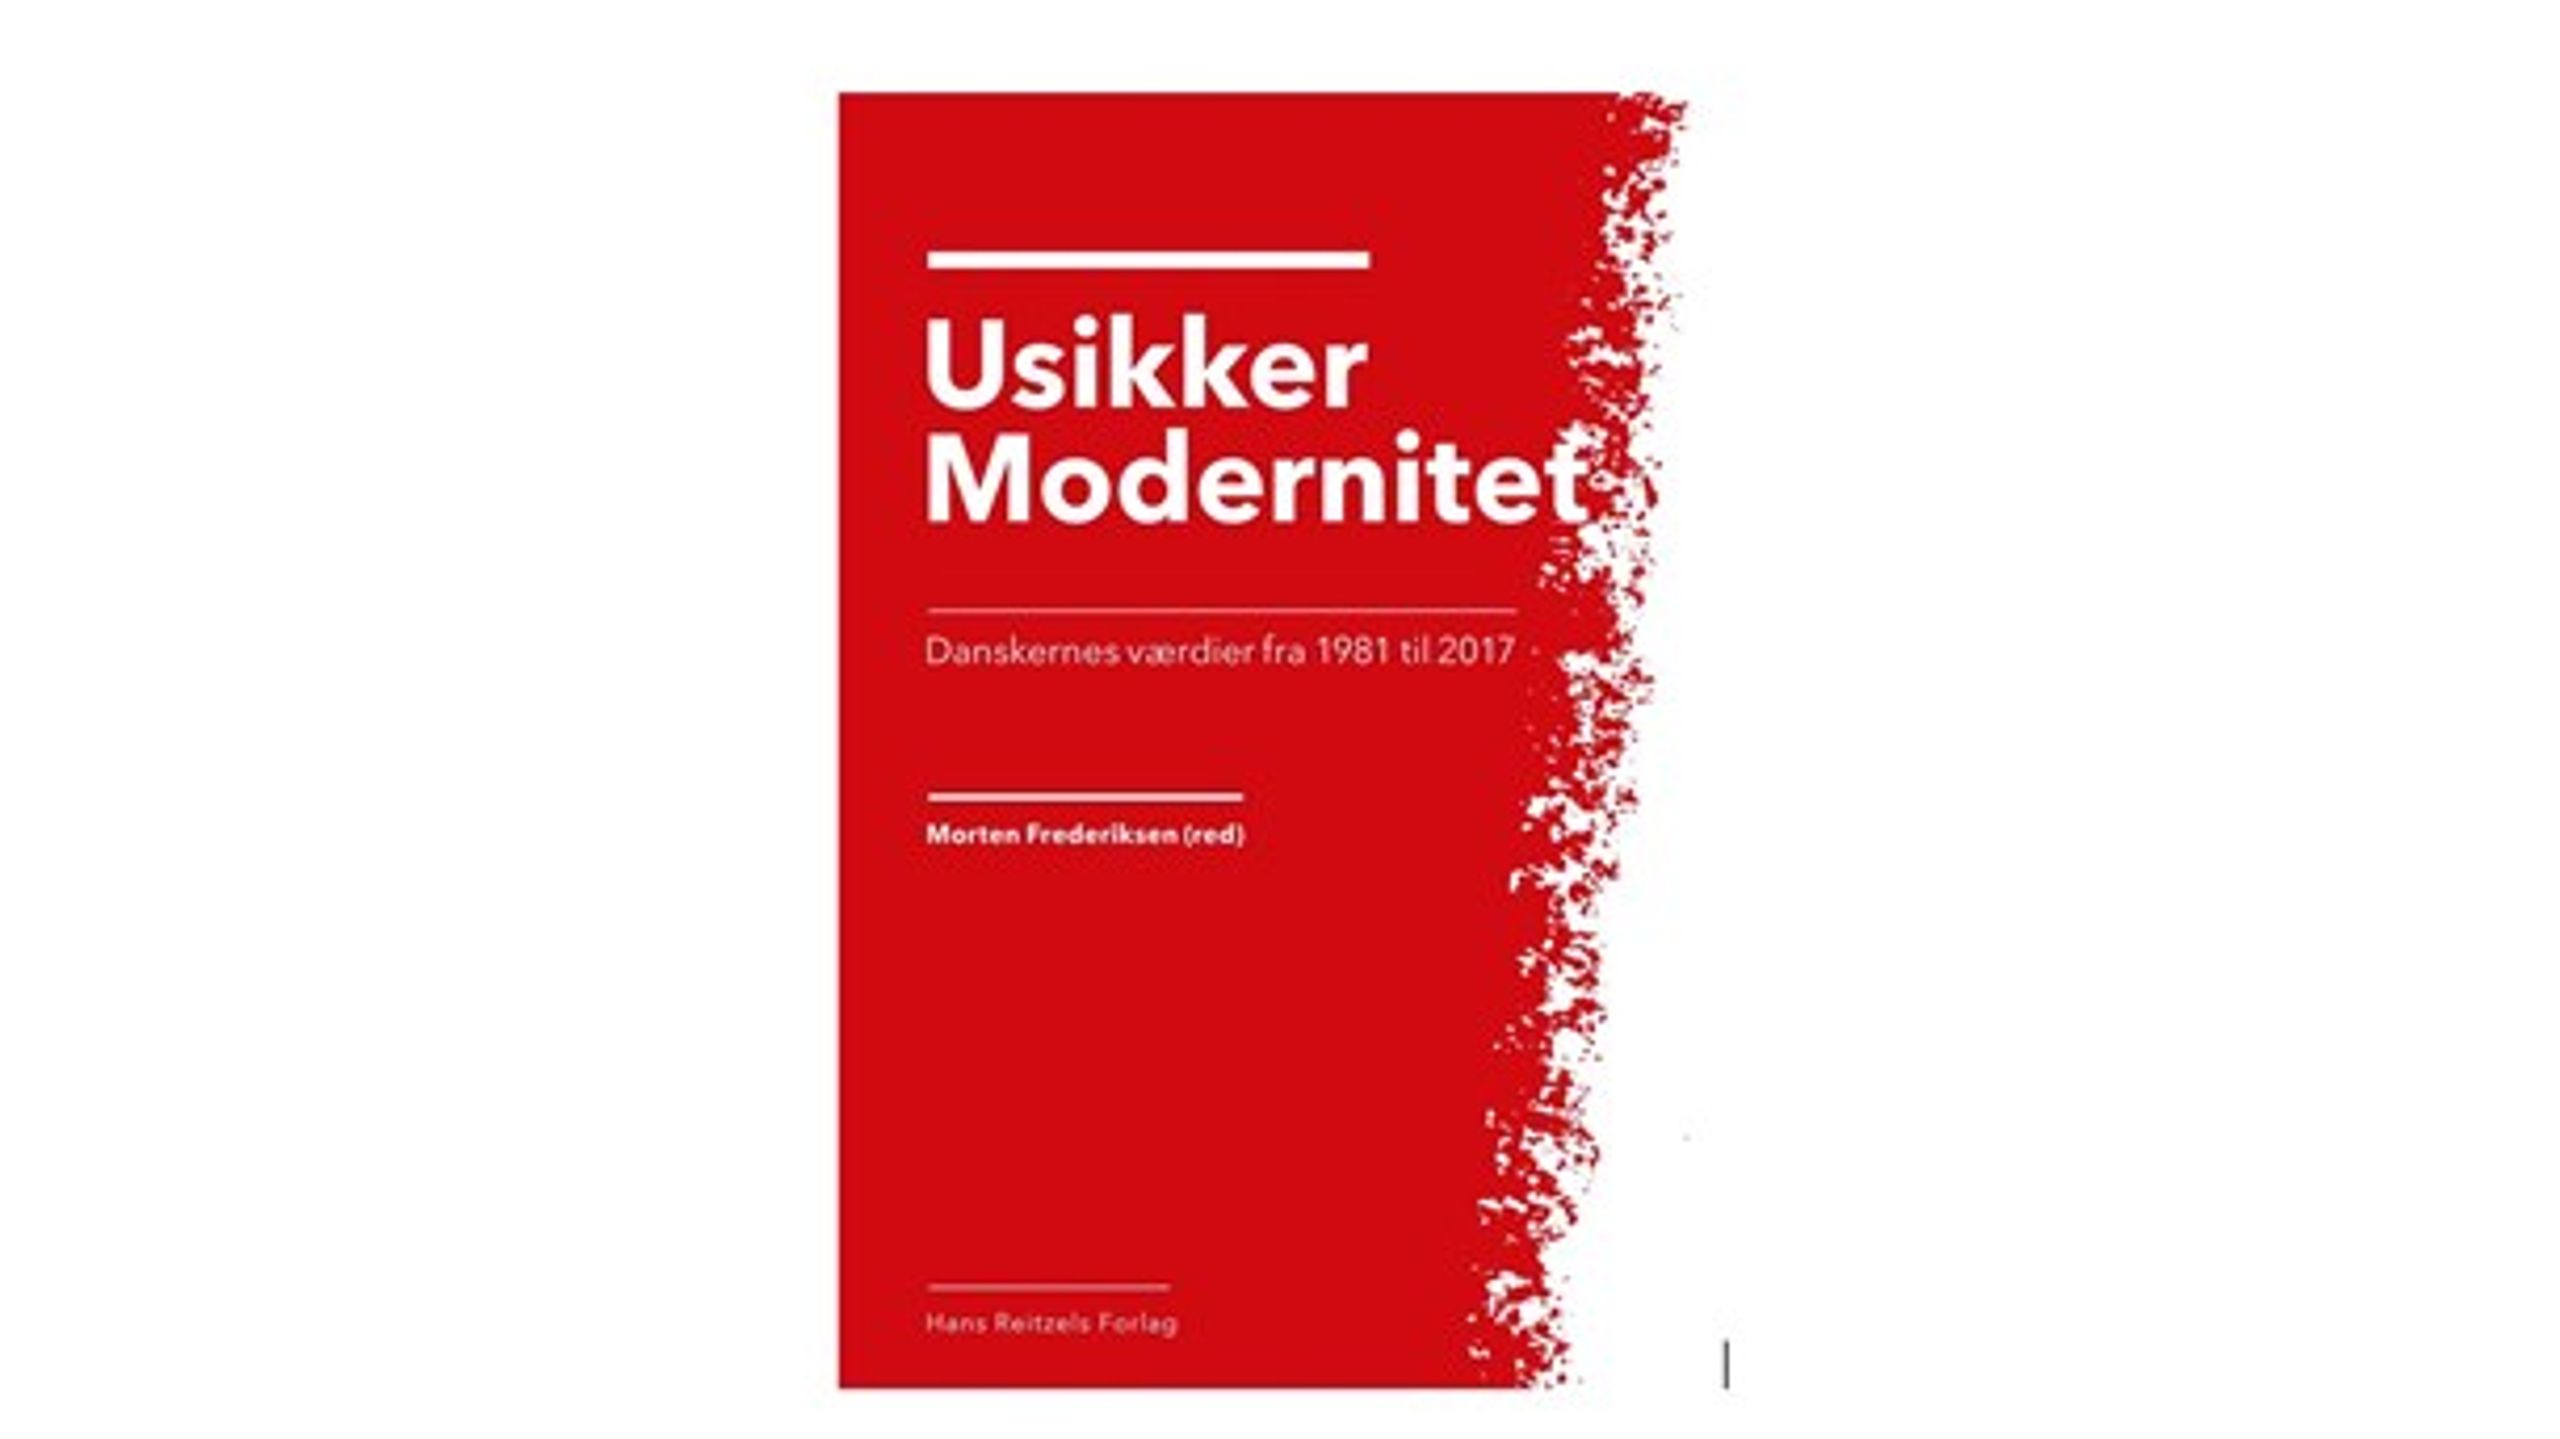 Den 28. maj udkommer bogen ”Usikker modernitet”, som bygger på Den 
Danske Værdiundersøgelse 2017. En tilbagevendende spørgeundersøgelse, 
som bliver gennemført hvert niende år og beskriver udviklingen i 
danskernes værdier. Her kan du læse et uddrag om forandringerne i foreningsmedlemskab og frivilligt arbejde.<br>